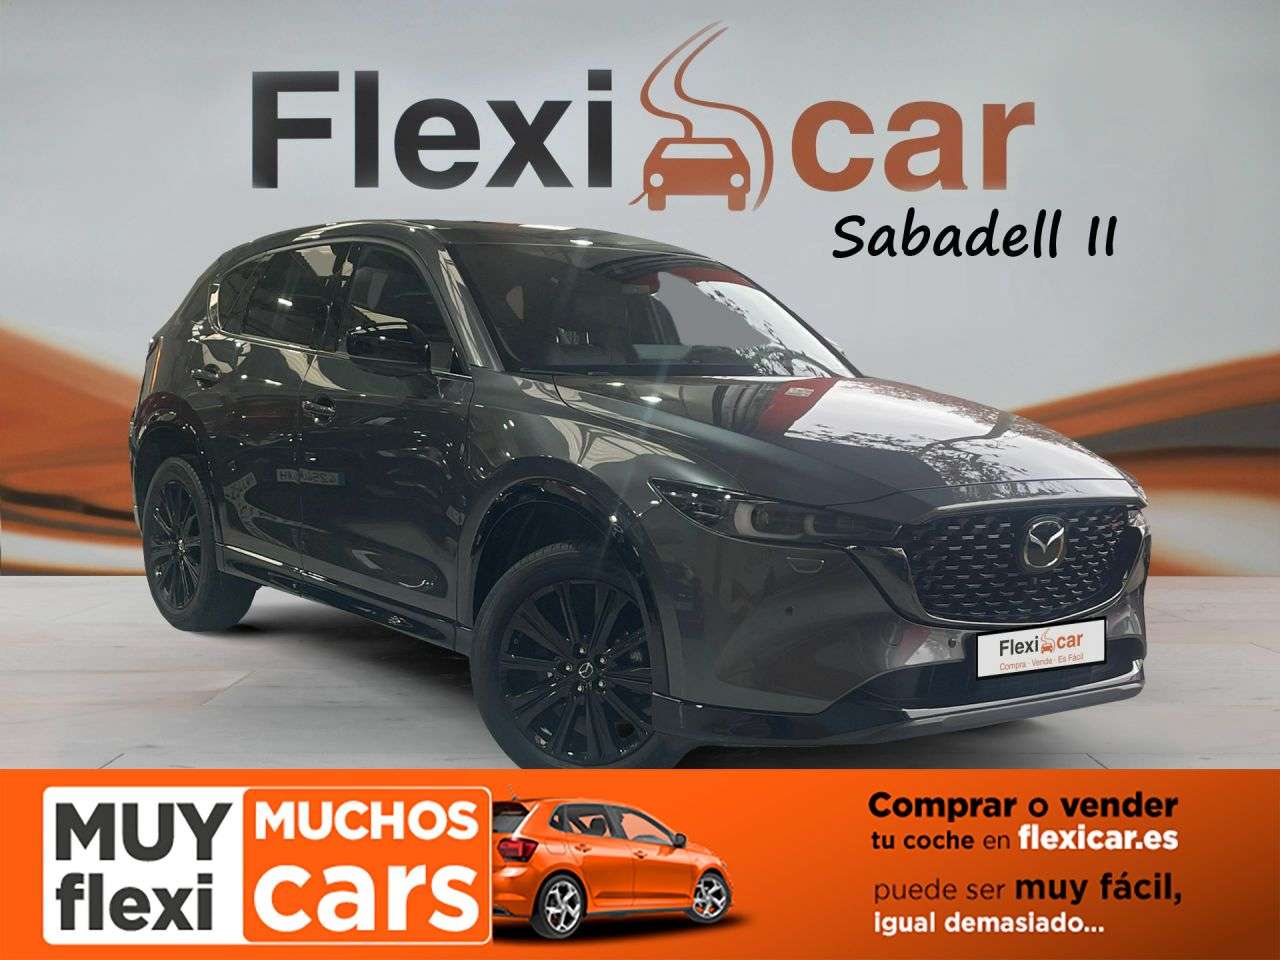 Mazda CX-5 Off-Road/Pick-up in Grey used in PATERNA for € 28,990.-